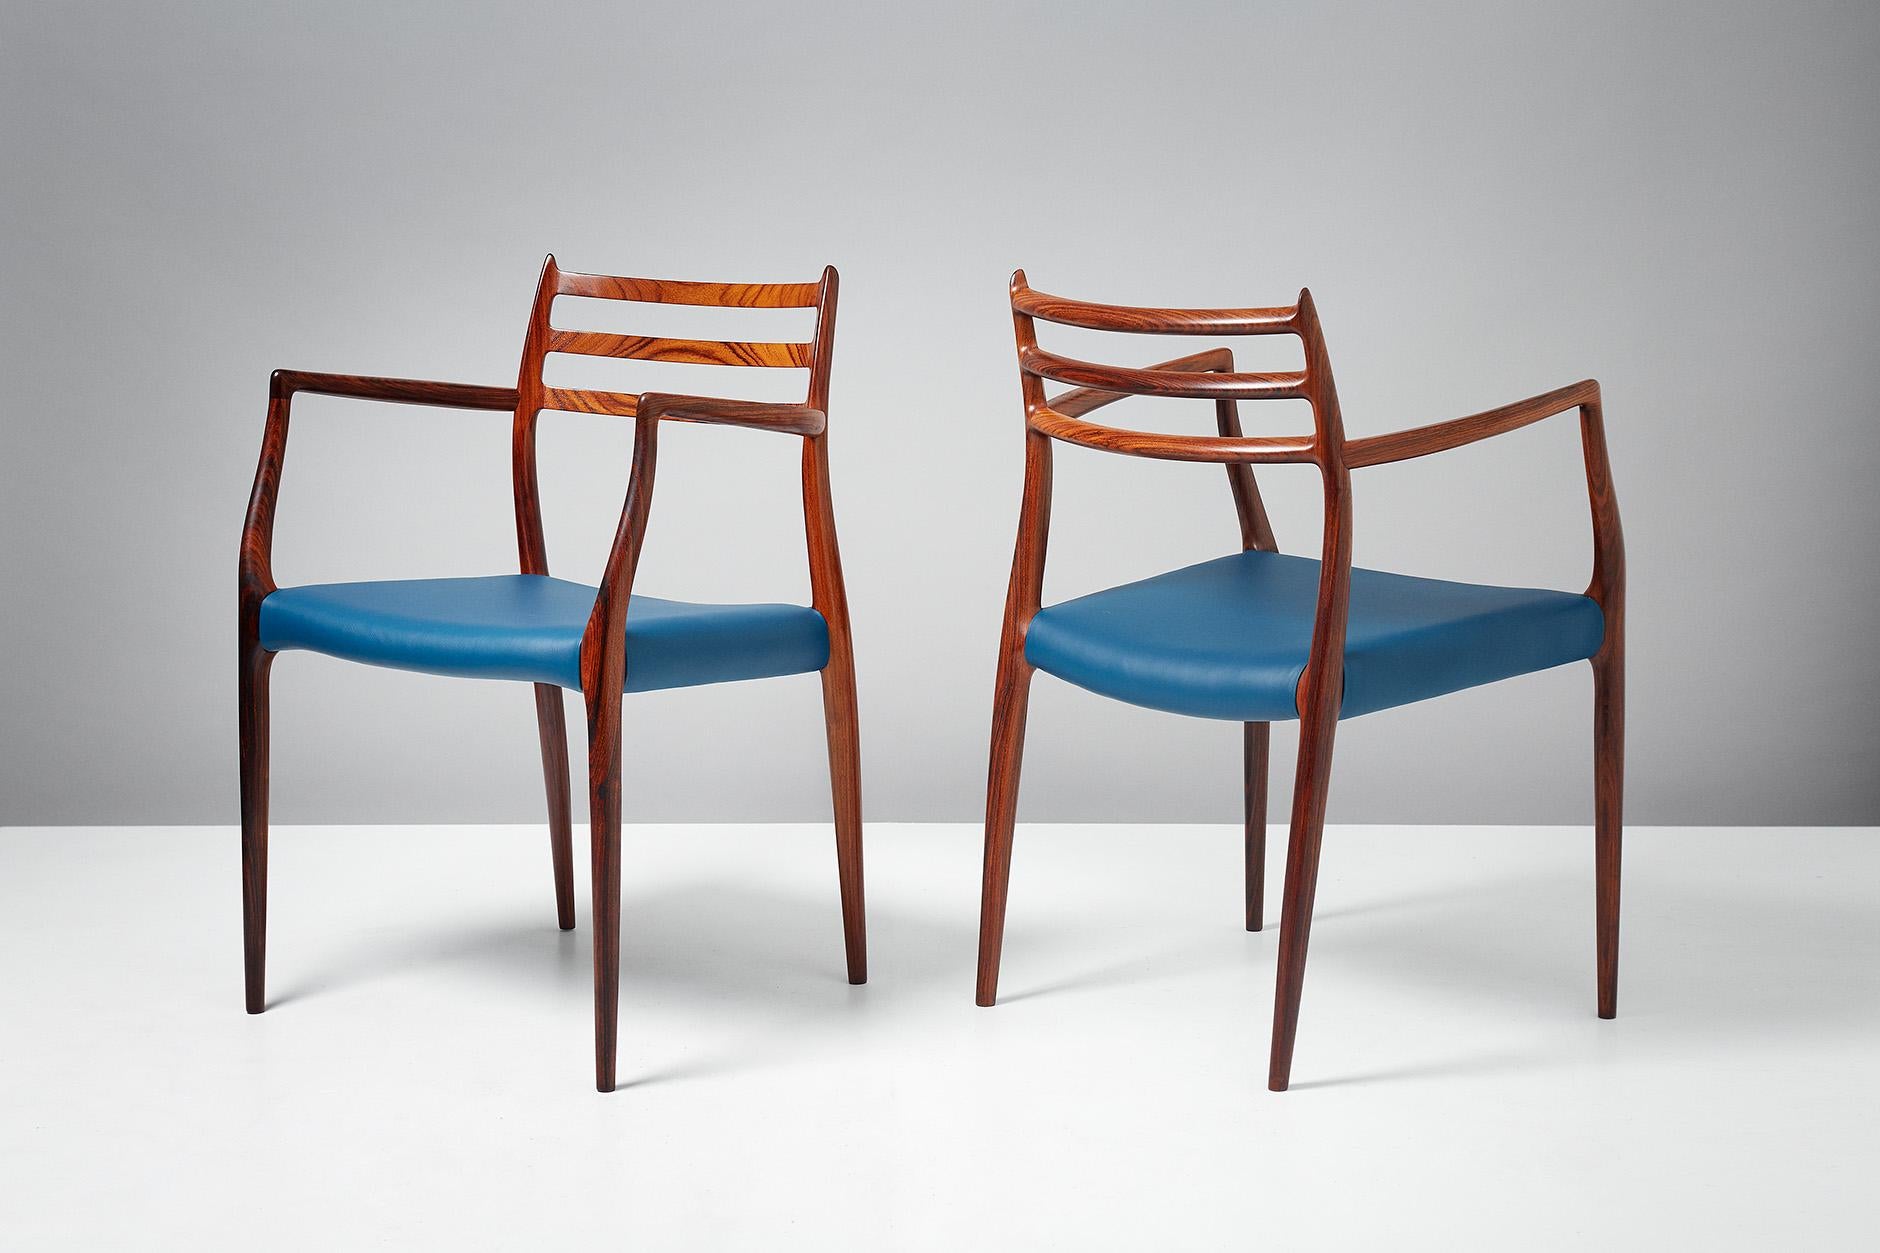 Niels Moller

Paire de fauteuils modèle 62, vers 1962

Fauteuils en bois de rose conçus par Niels Moller pour J.L. Moller Mobelfabrik, Danemark, 1962 avec de nouveaux sièges en cuir bleu majolique. Ces exemples sont les premières productions,